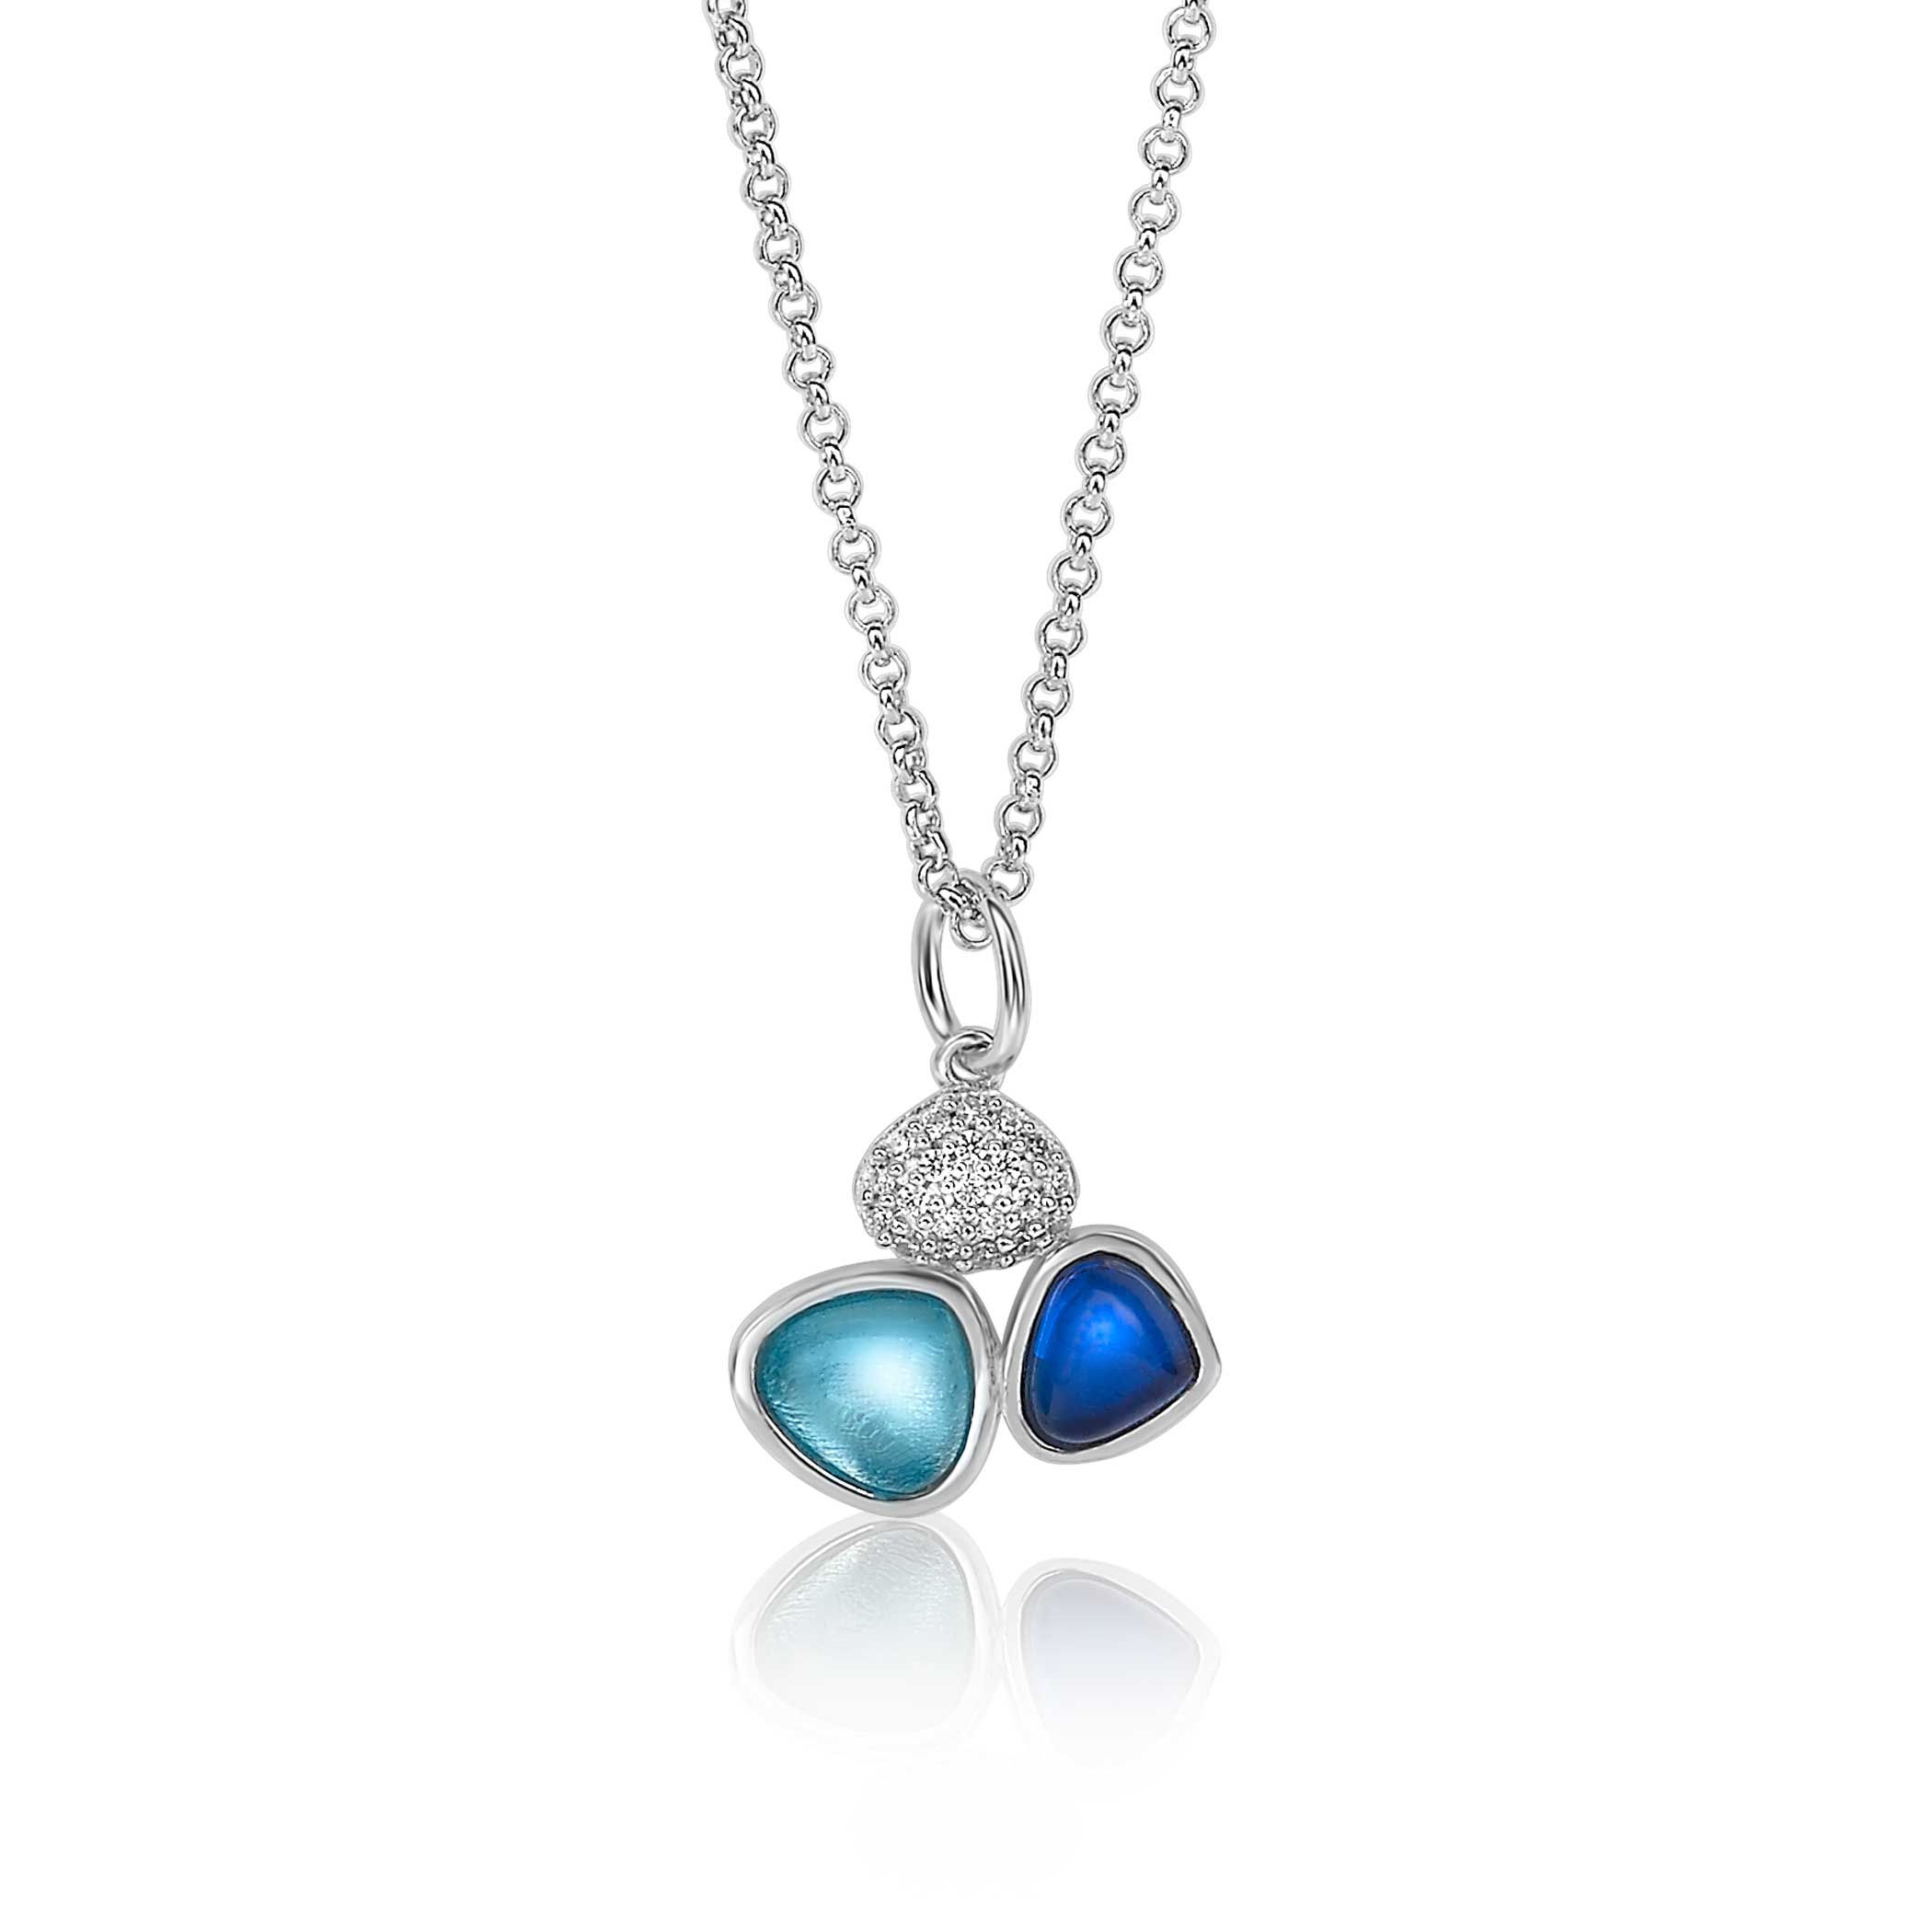 Ontwarren in beroep gaan baden Wolters juweliers | ZINZI zilveren ketting driehoek blauw wit turquoise  45cm ZIC1786B